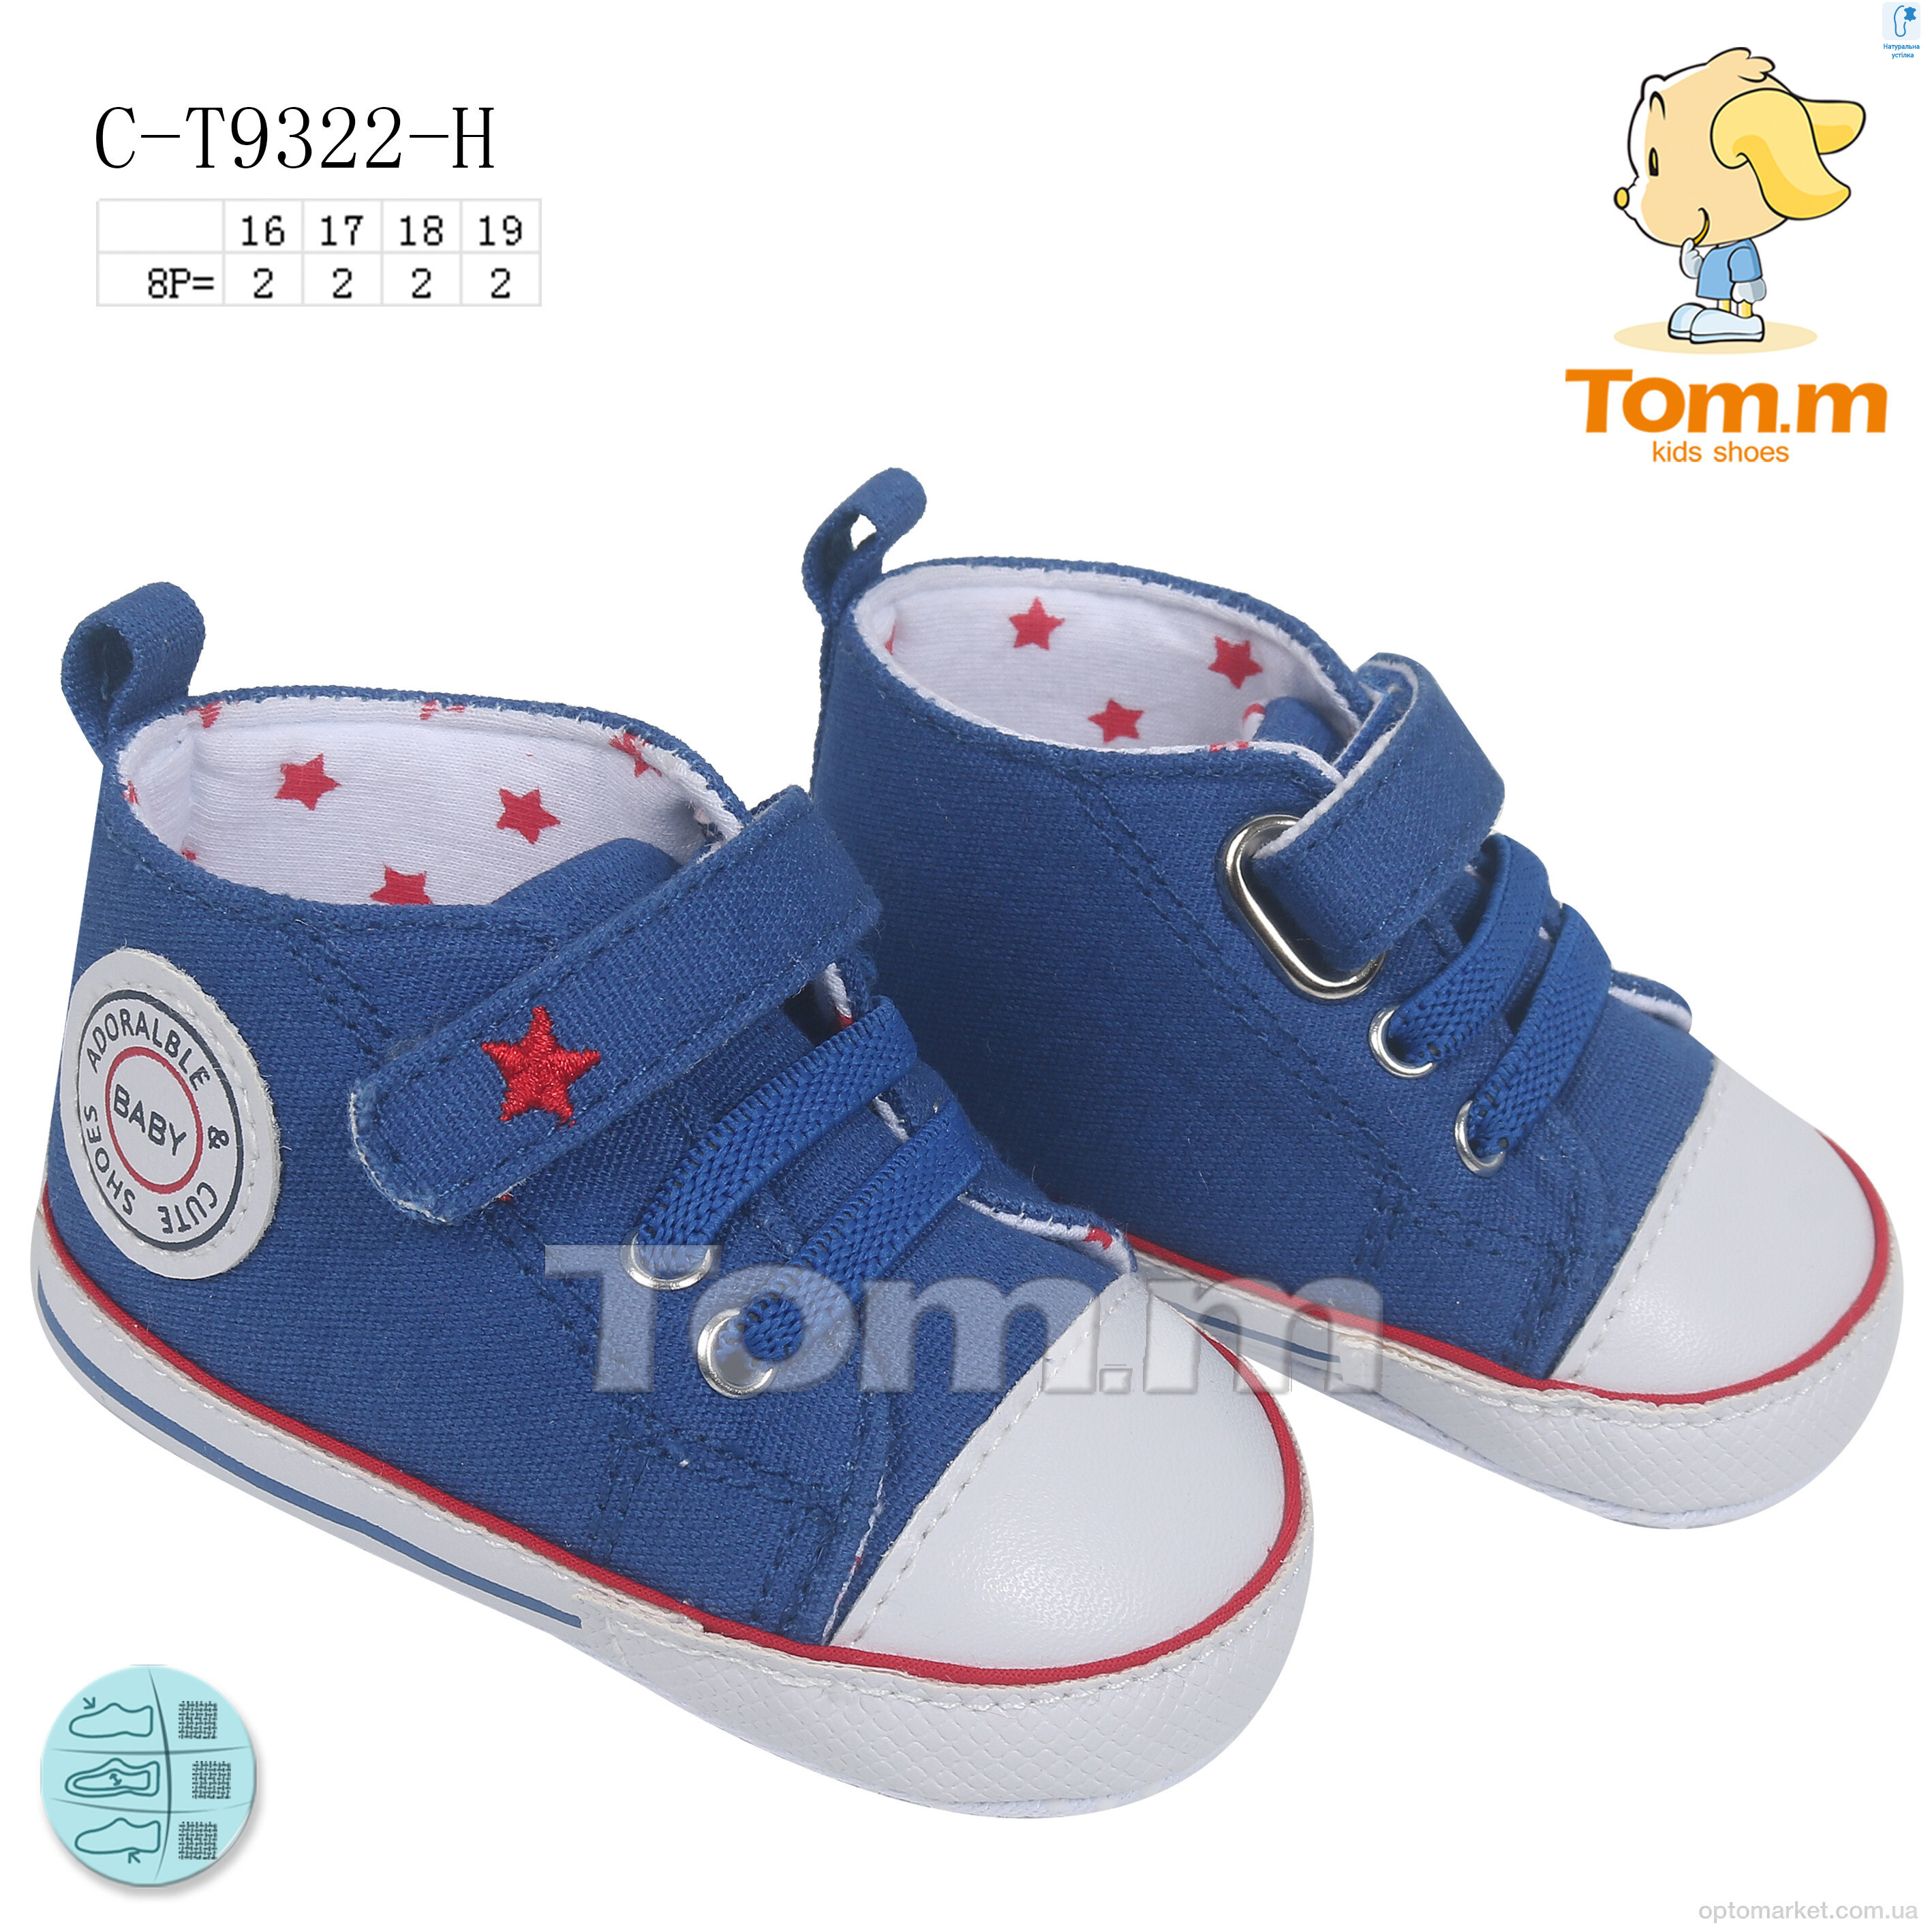 Купить Пінетки дитячі C-T9322-H TOM.M блакитний, фото 1